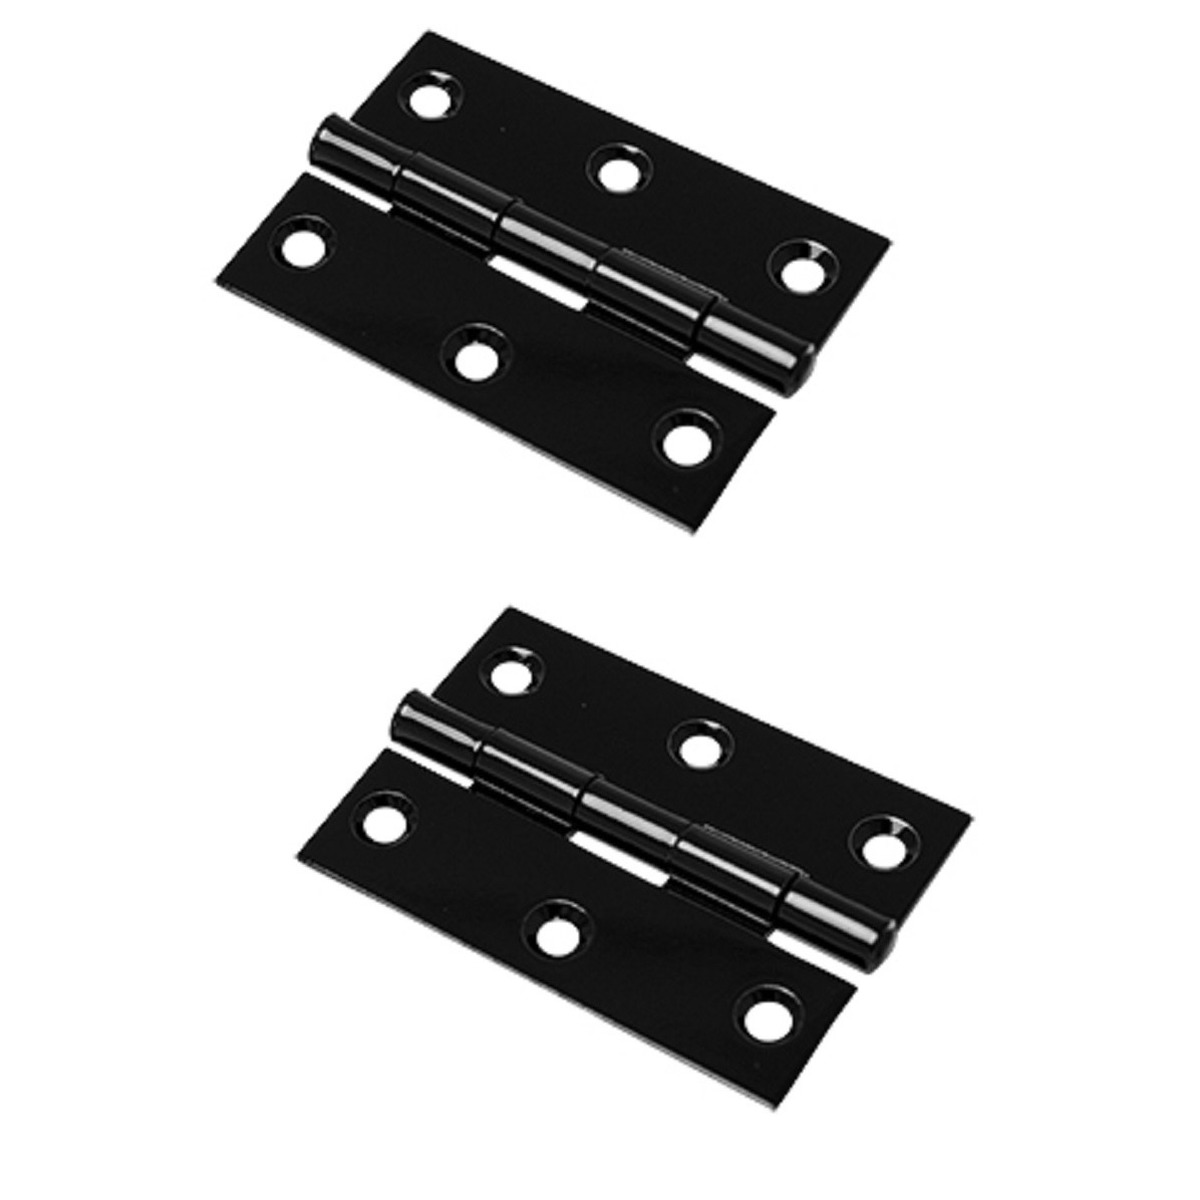 8x stuks scharnier-bouwscharnier-meubelscharnieren zwart ijzer met rechte hoeken 9 x 9 x 2 cm